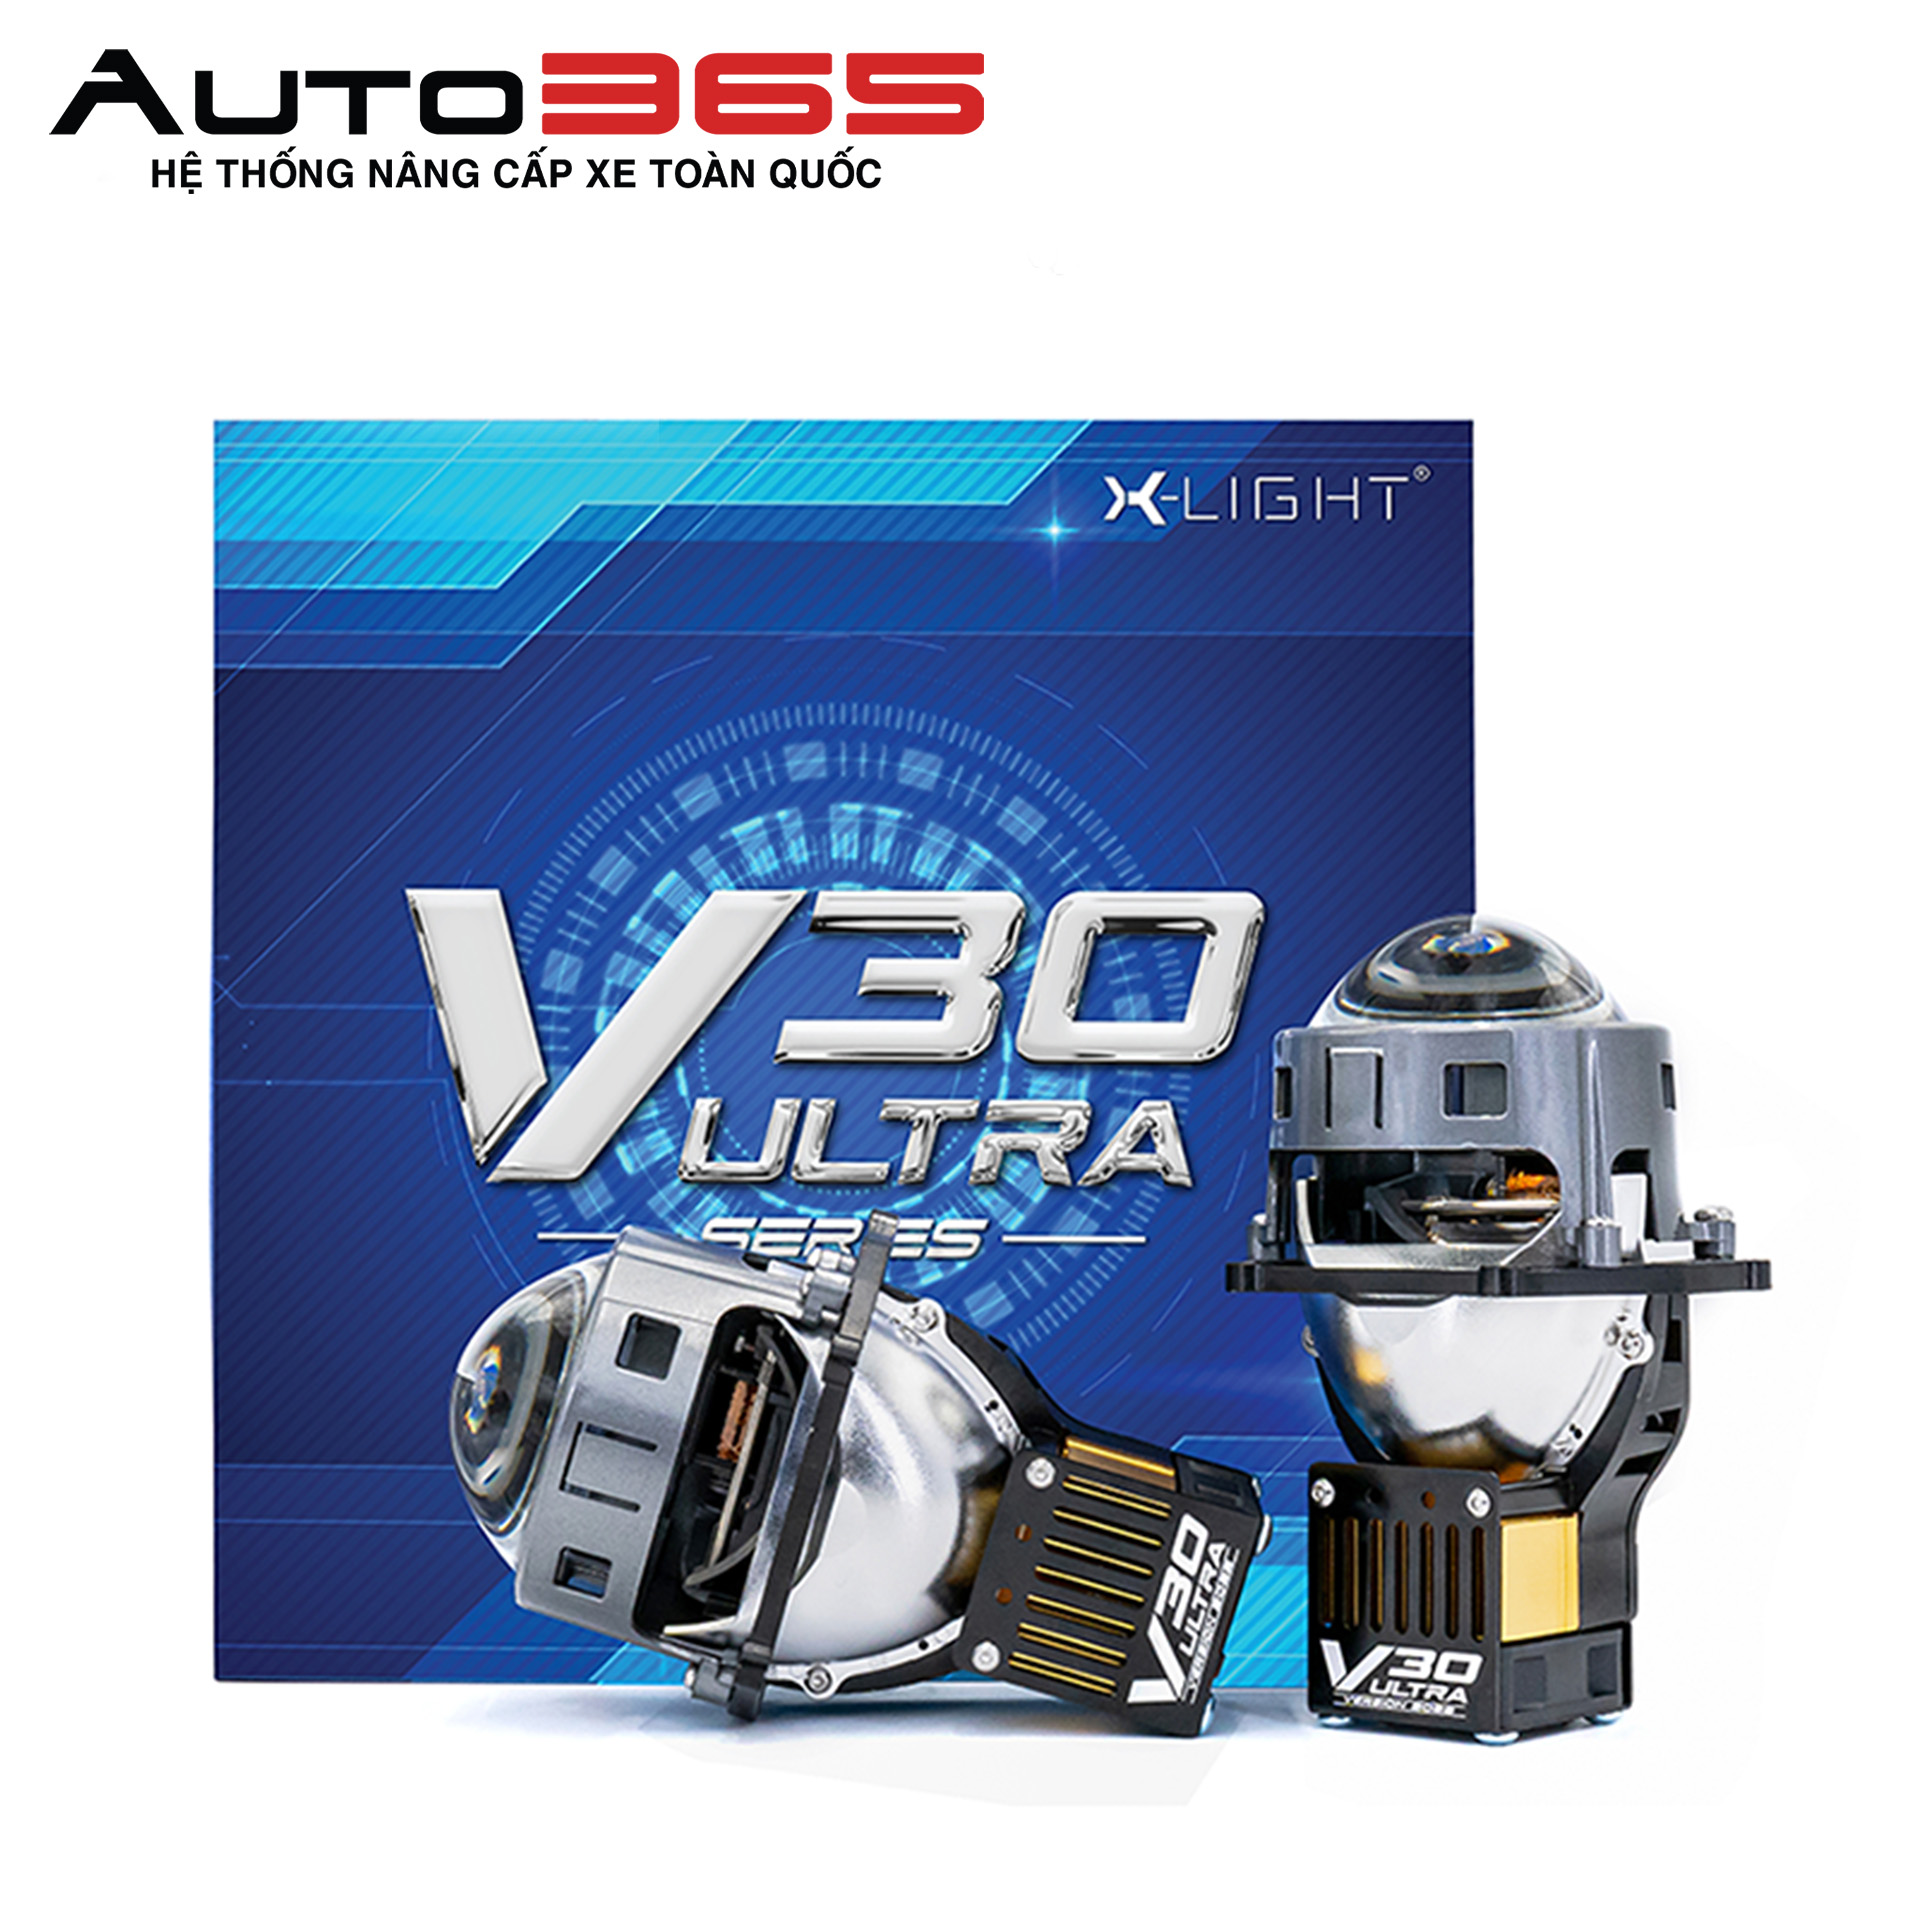 Mẫu sản phẩm X - Light V30 Ultra đang gây sốt thị trường